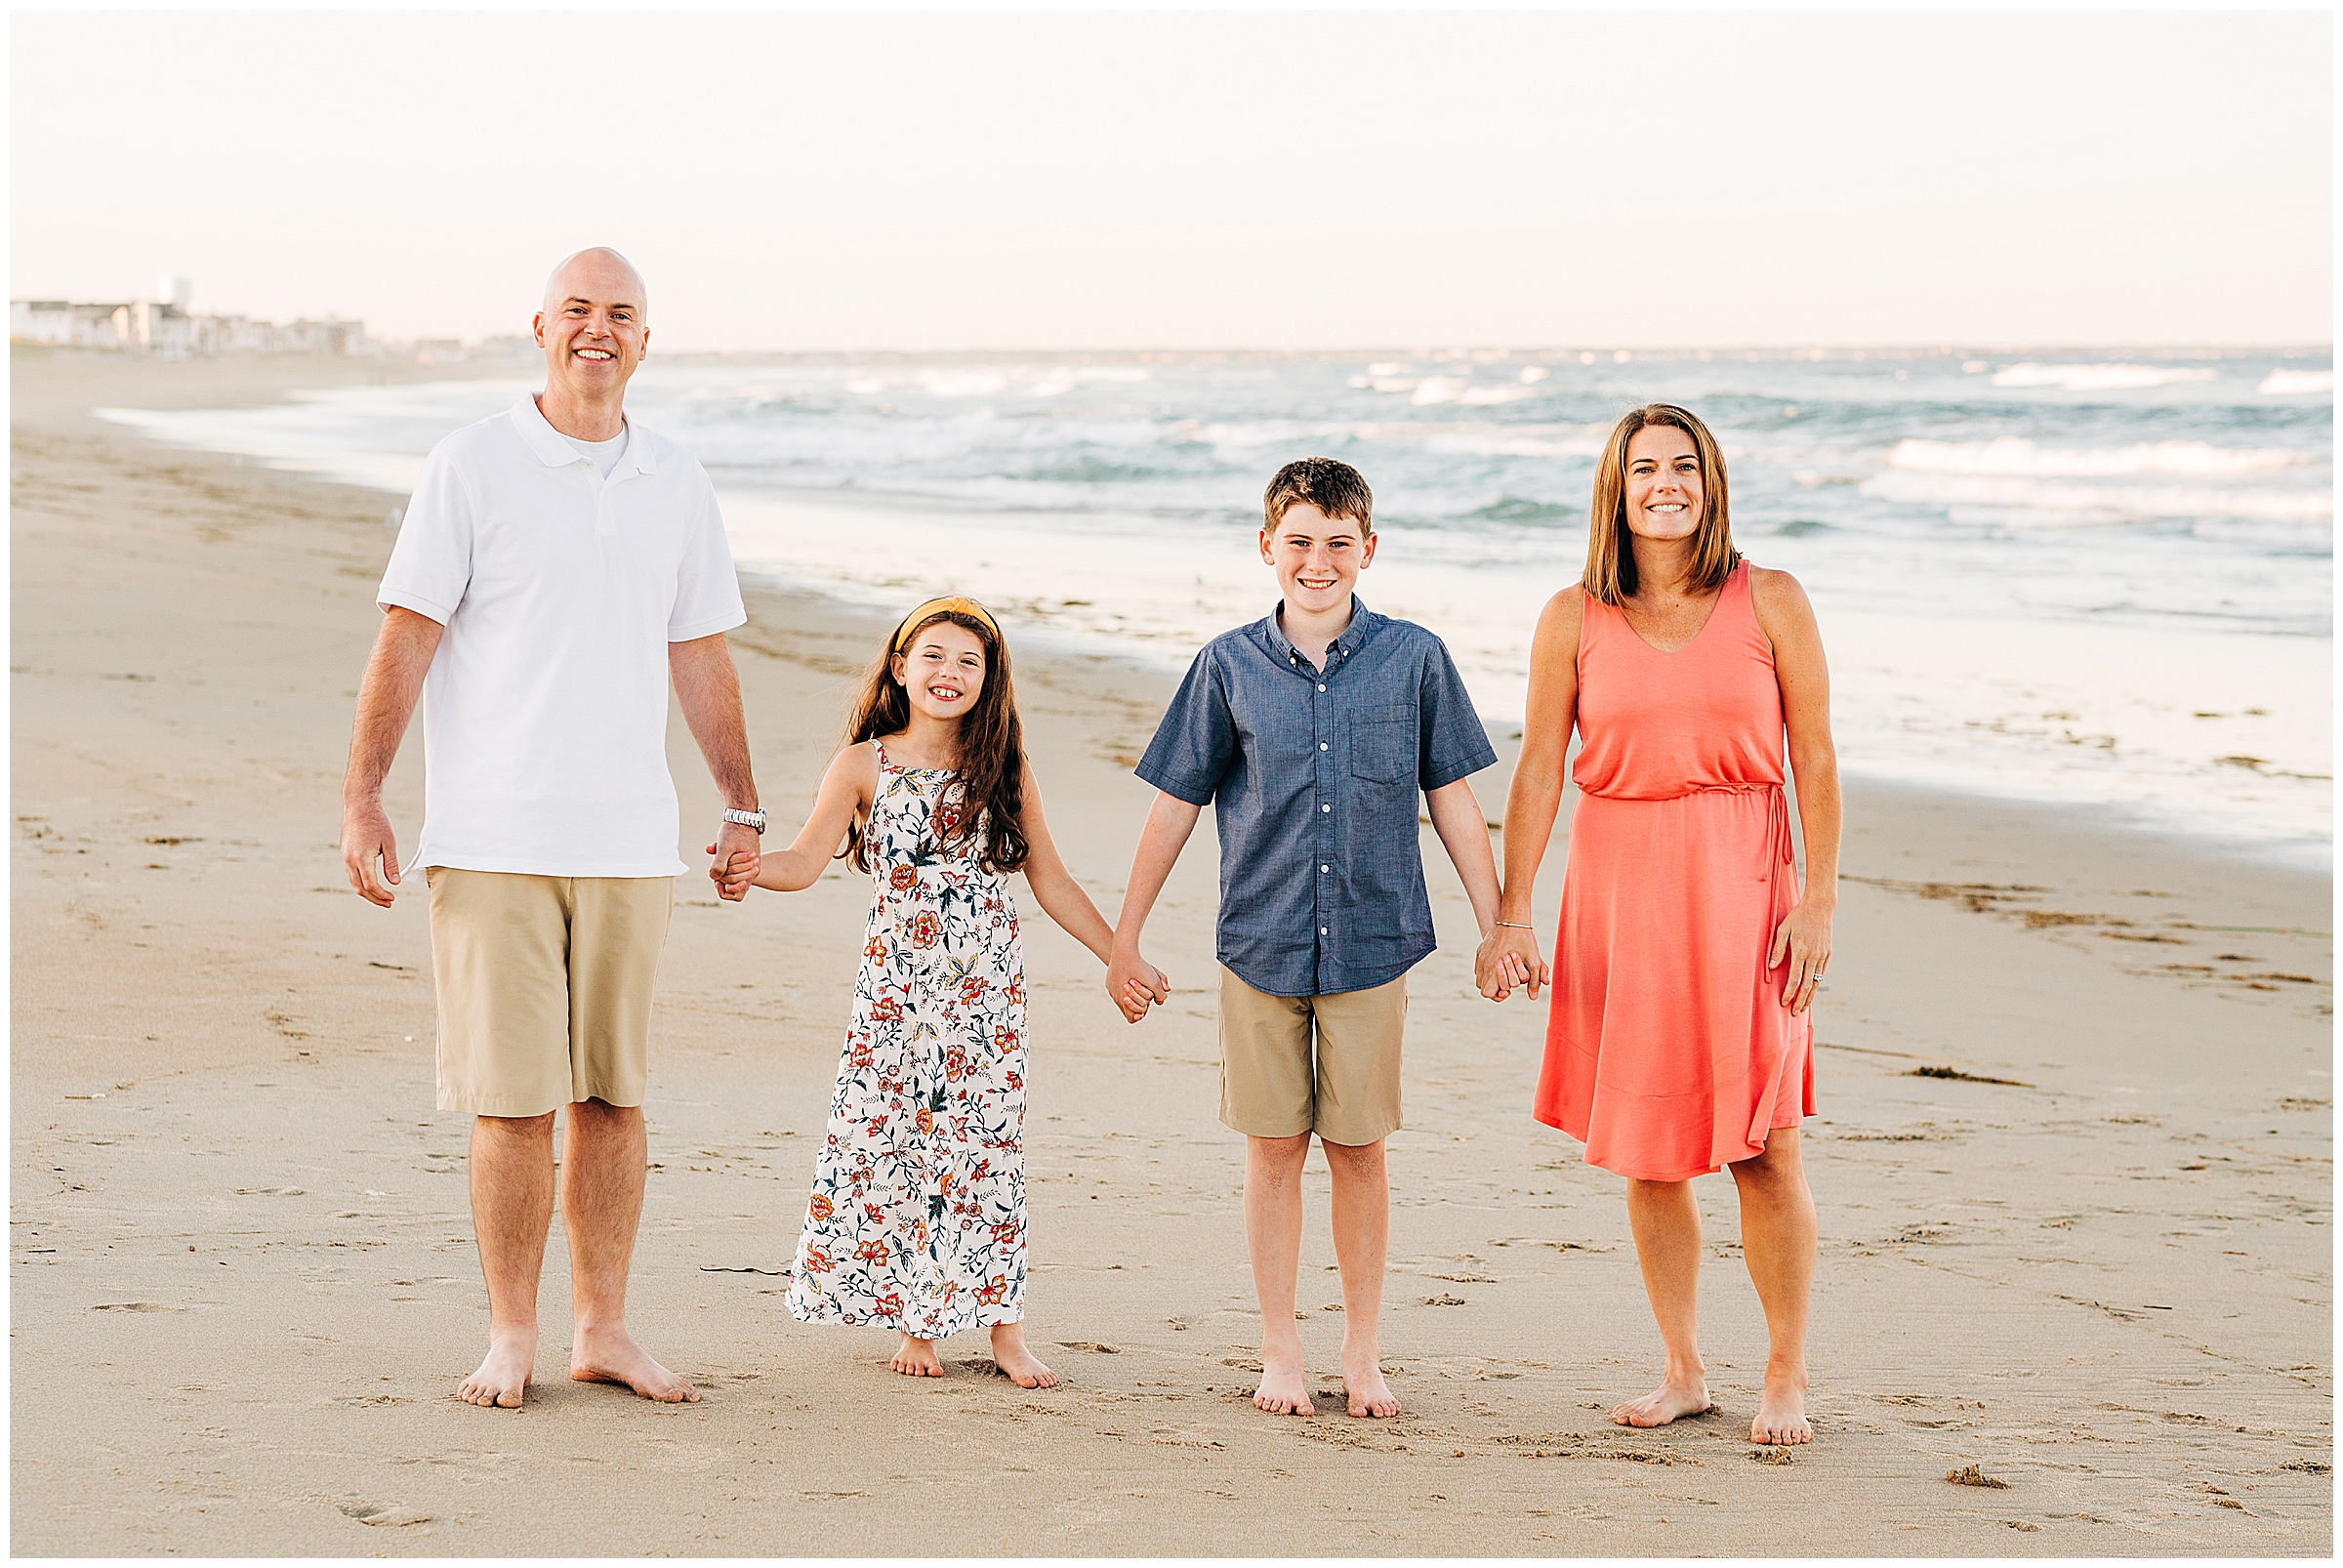 A family walks on the beach